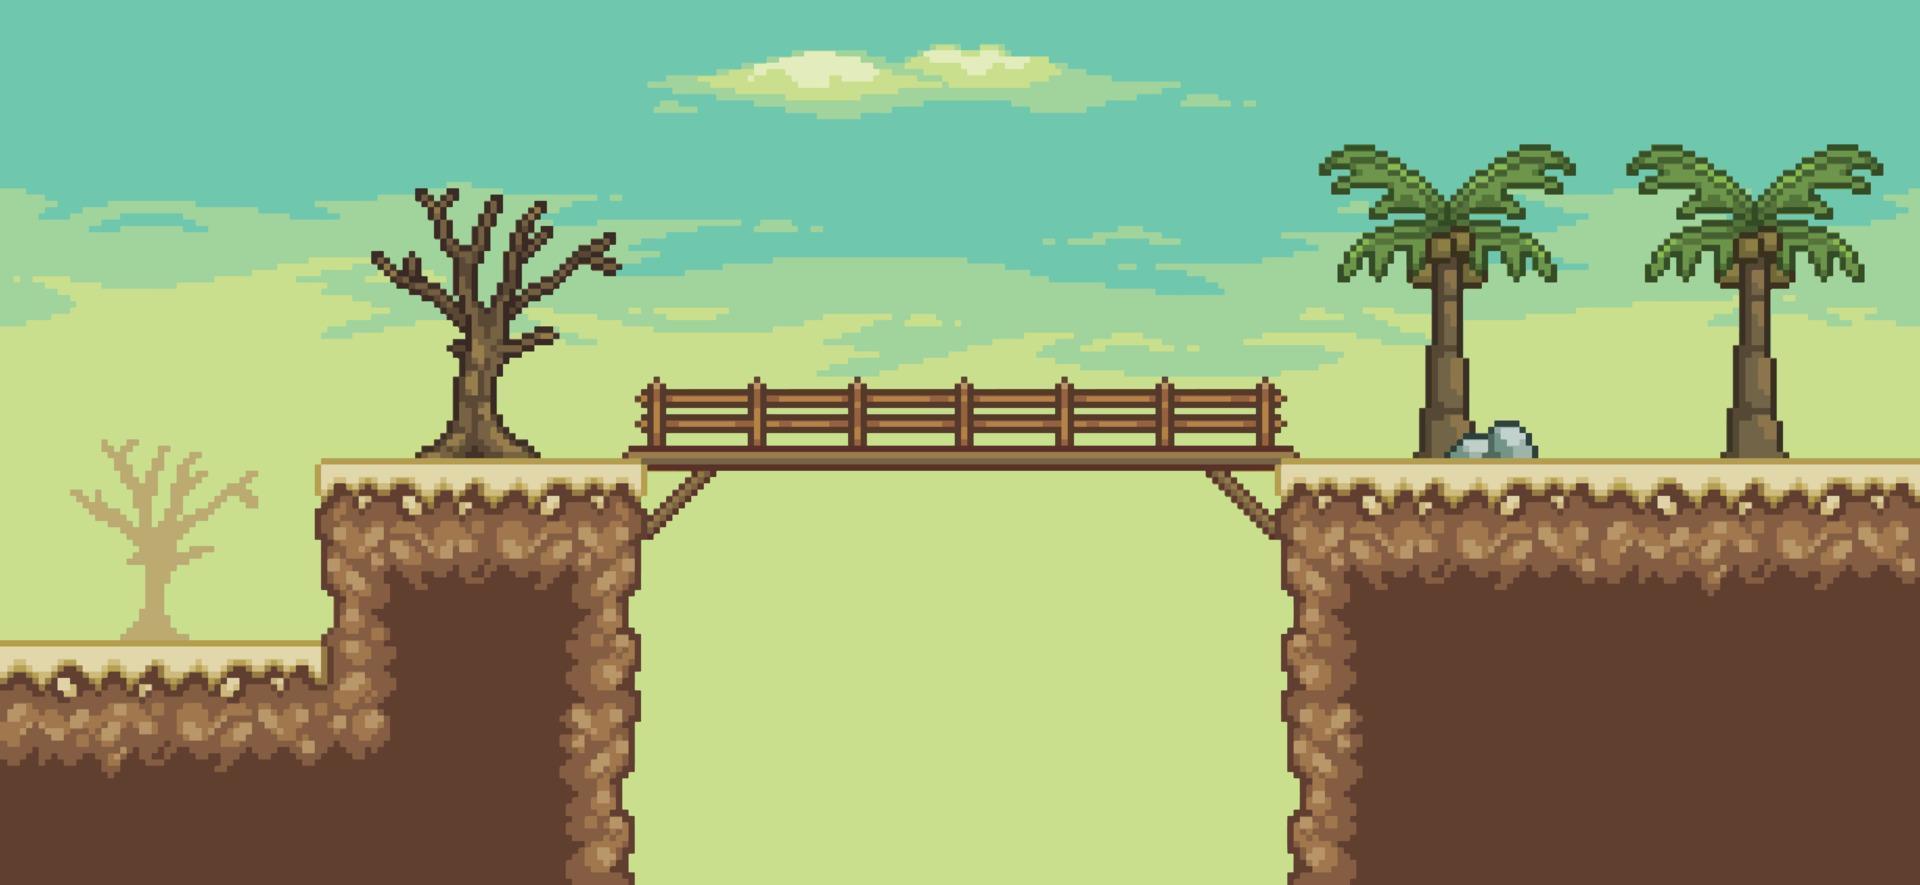 scène de jeu pixel art désert avec palmier, cactus, pont, arrière-plan arbre 8 bits vecteur